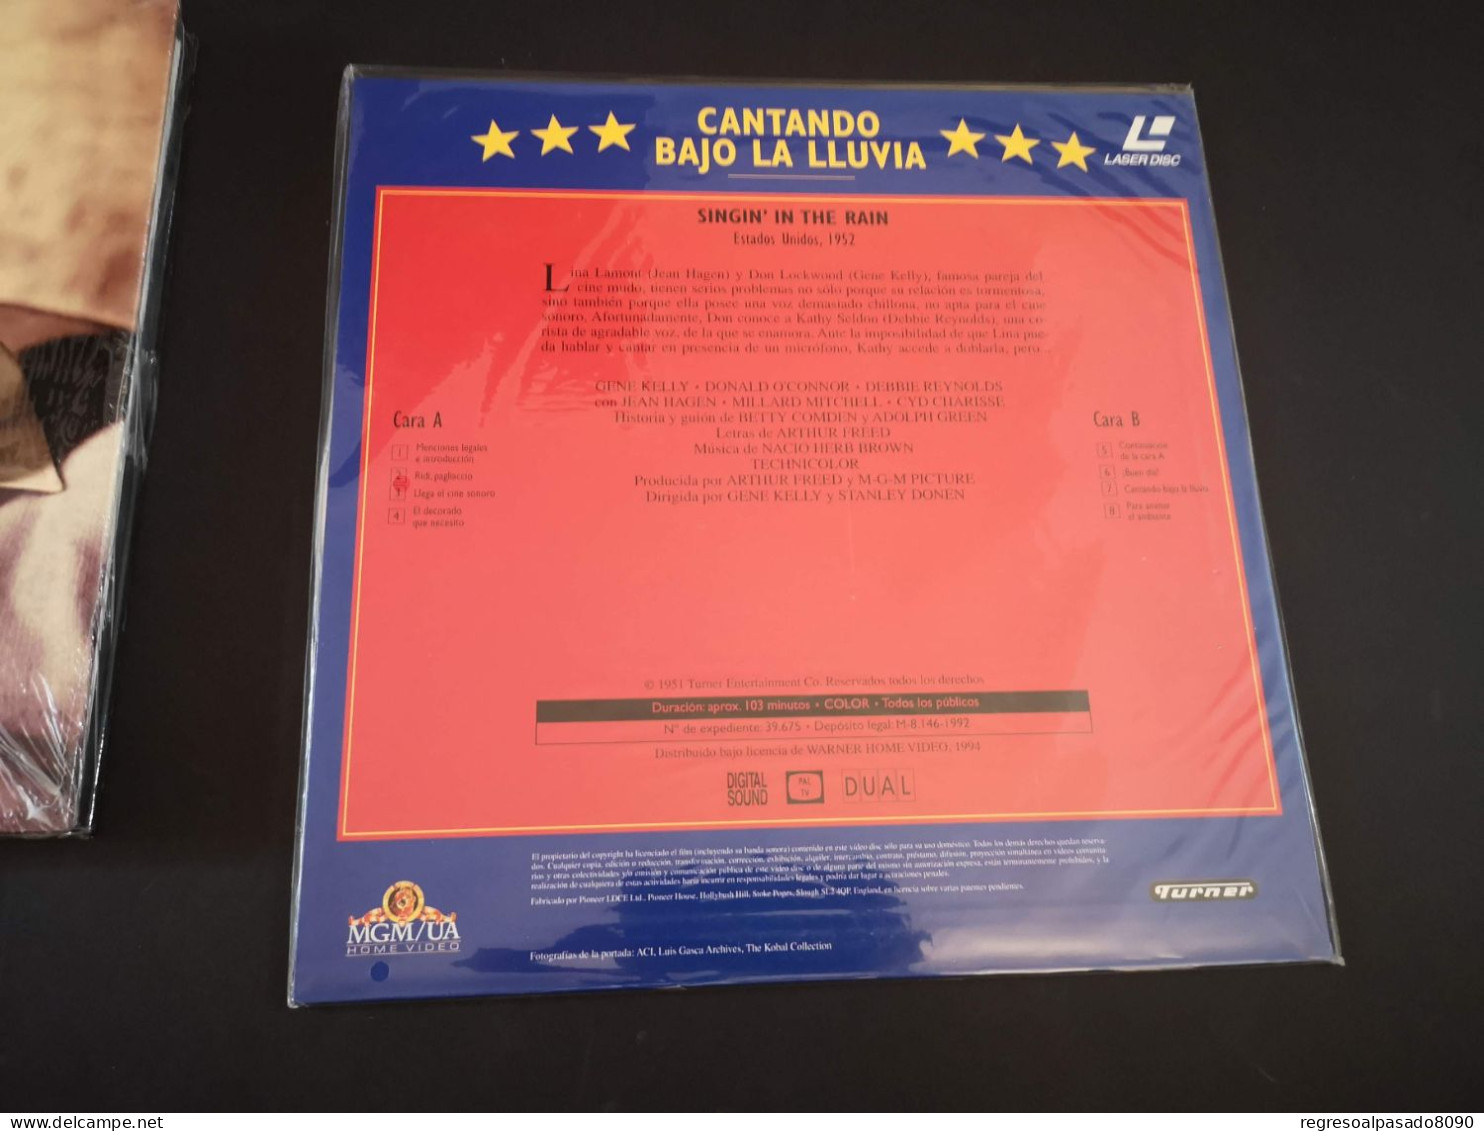 Gene Kelly Libro Y Película Laser Disc Laserdisc Cantando Bajo La Lluvia. Mitos Del Cine Planeta Años 90 - Classic